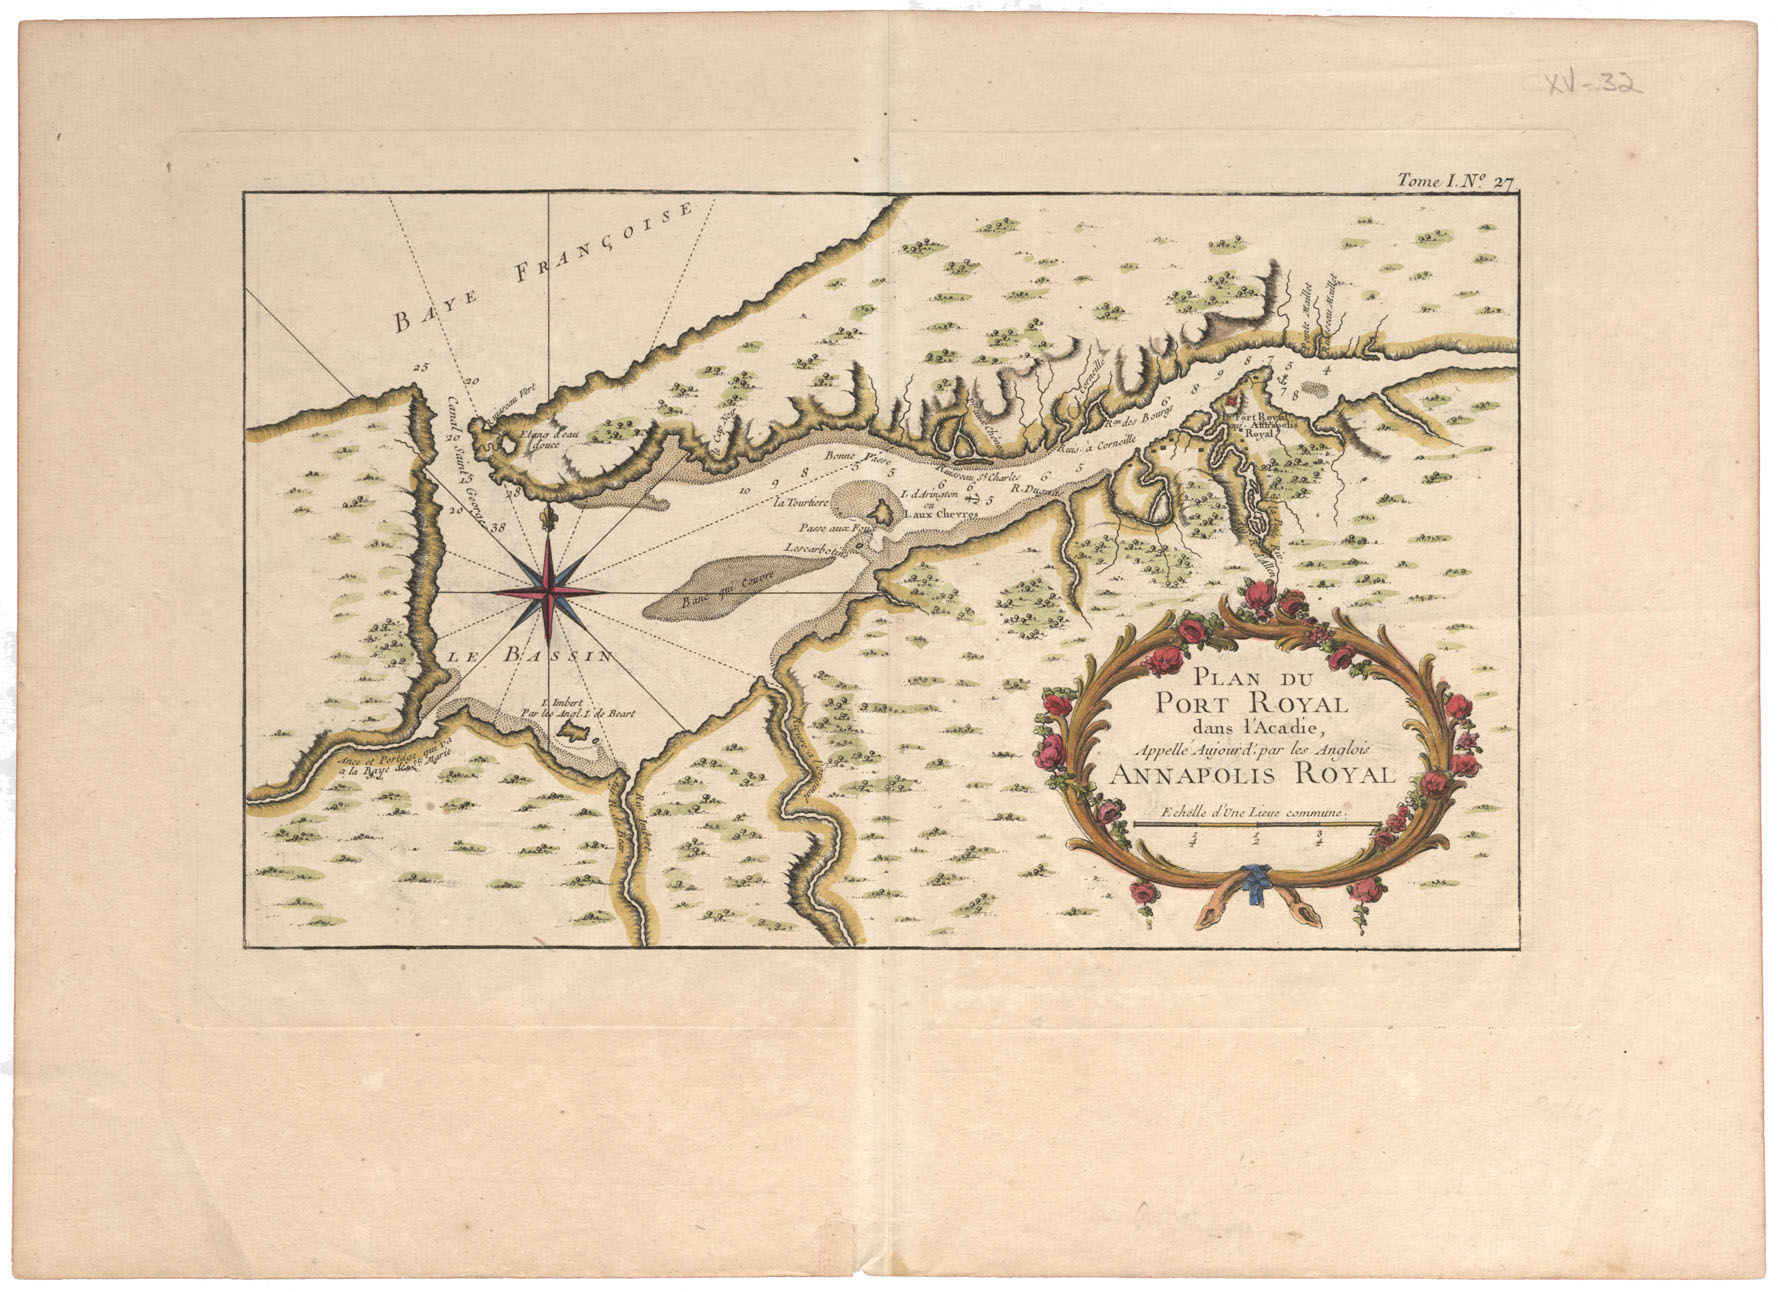 Plan du Port Royal dans l'Acadie apelle aujourd par les Anglais Annapolis Royal